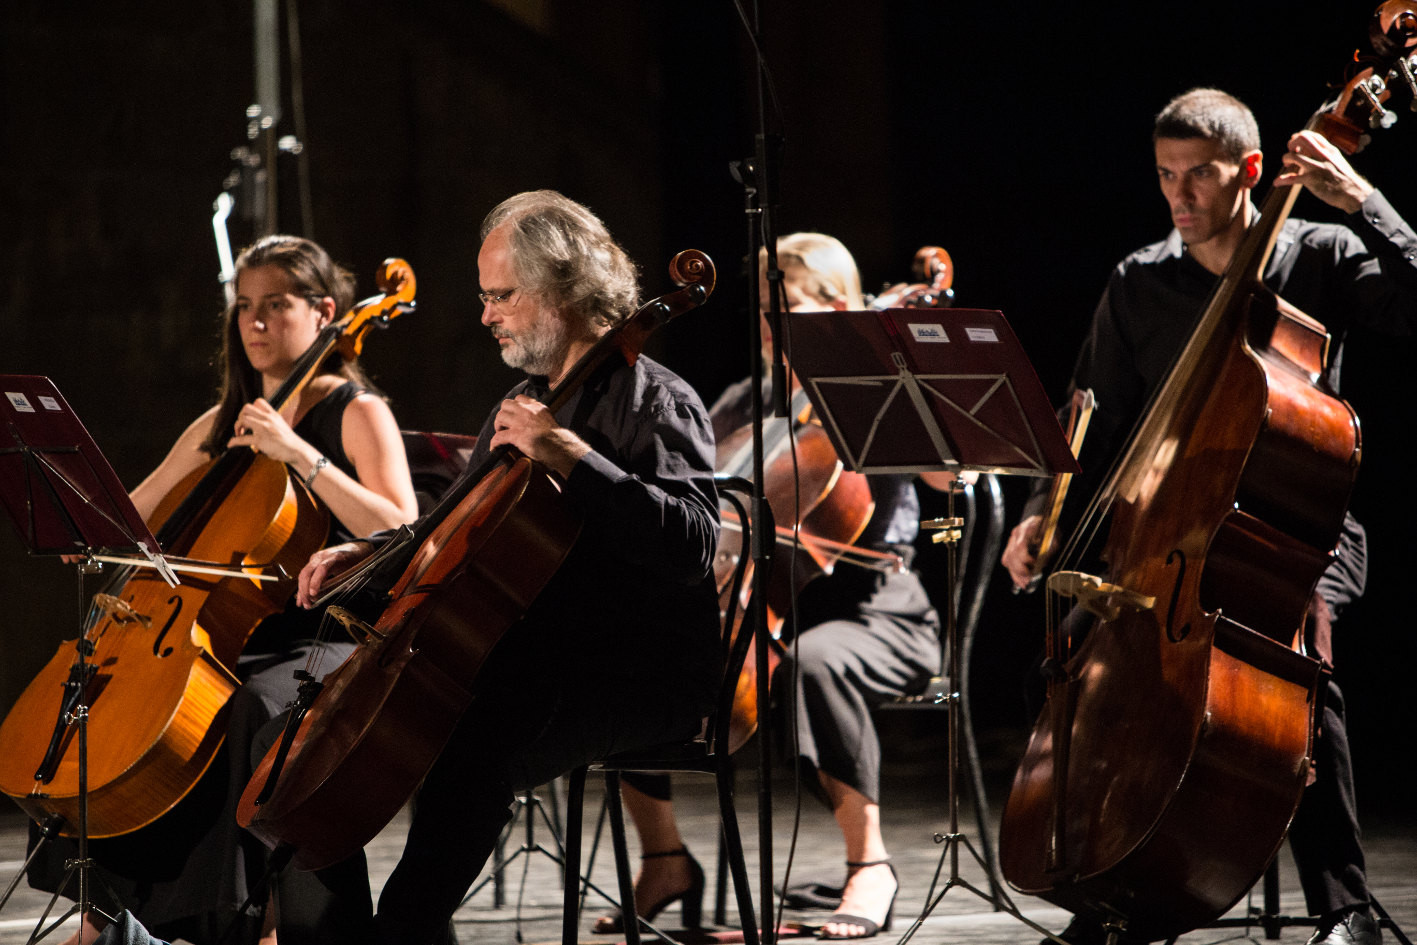 Firenze: Concerti della liuteria toscana, da Vivaldi a Beethoven con un prezioso violino di Serafino Casini